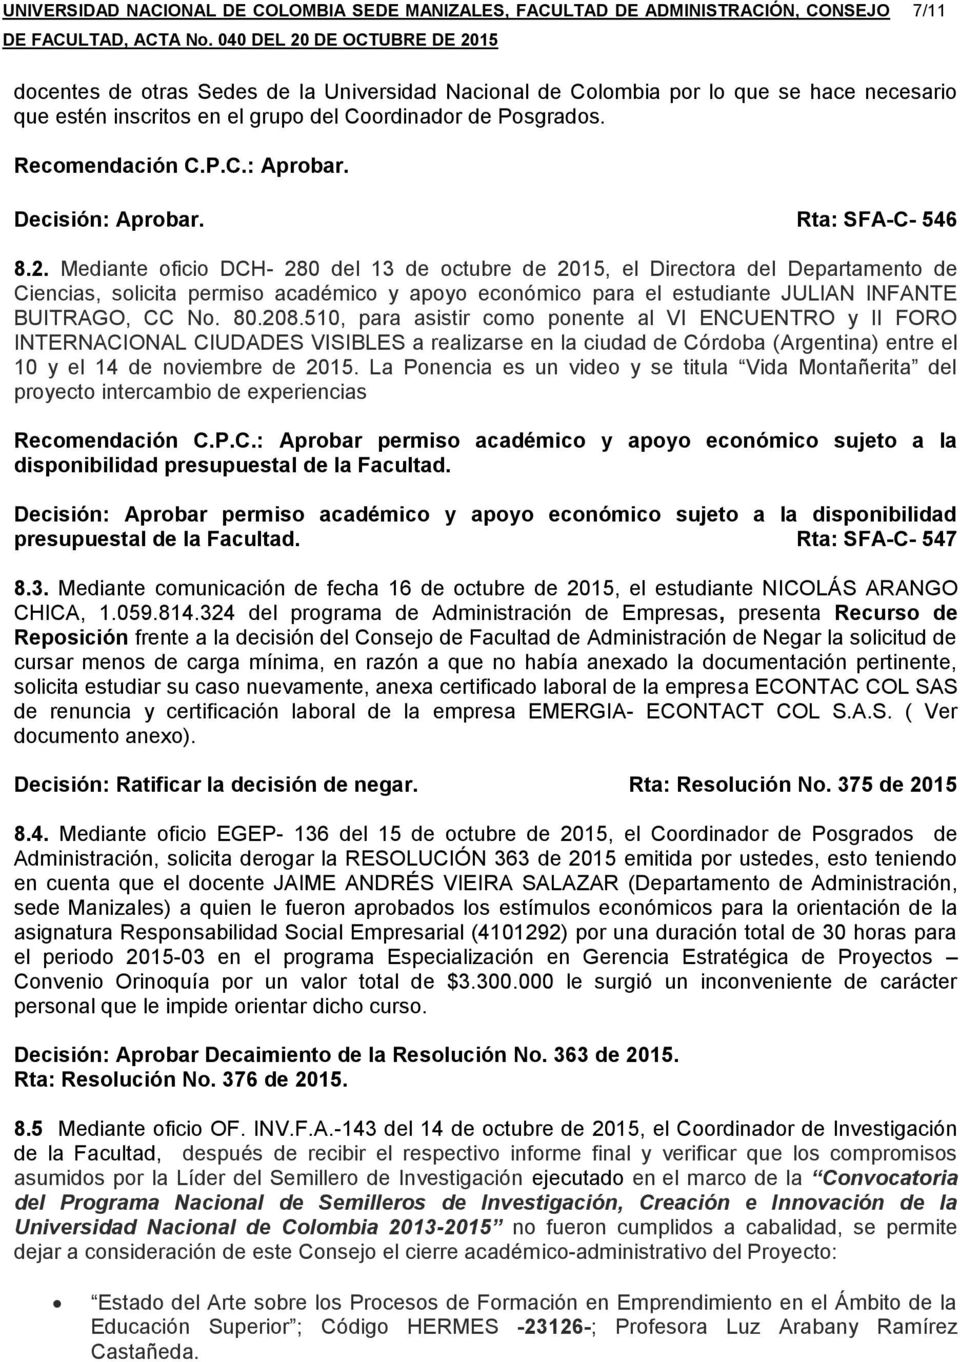 Mediante oficio DCH- 280 del 13 de octubre de 2015, el Directora del Departamento de Ciencias, solicita permiso académico y apoyo económico para el estudiante JULIAN INFANTE BUITRAGO, CC No. 80.208.